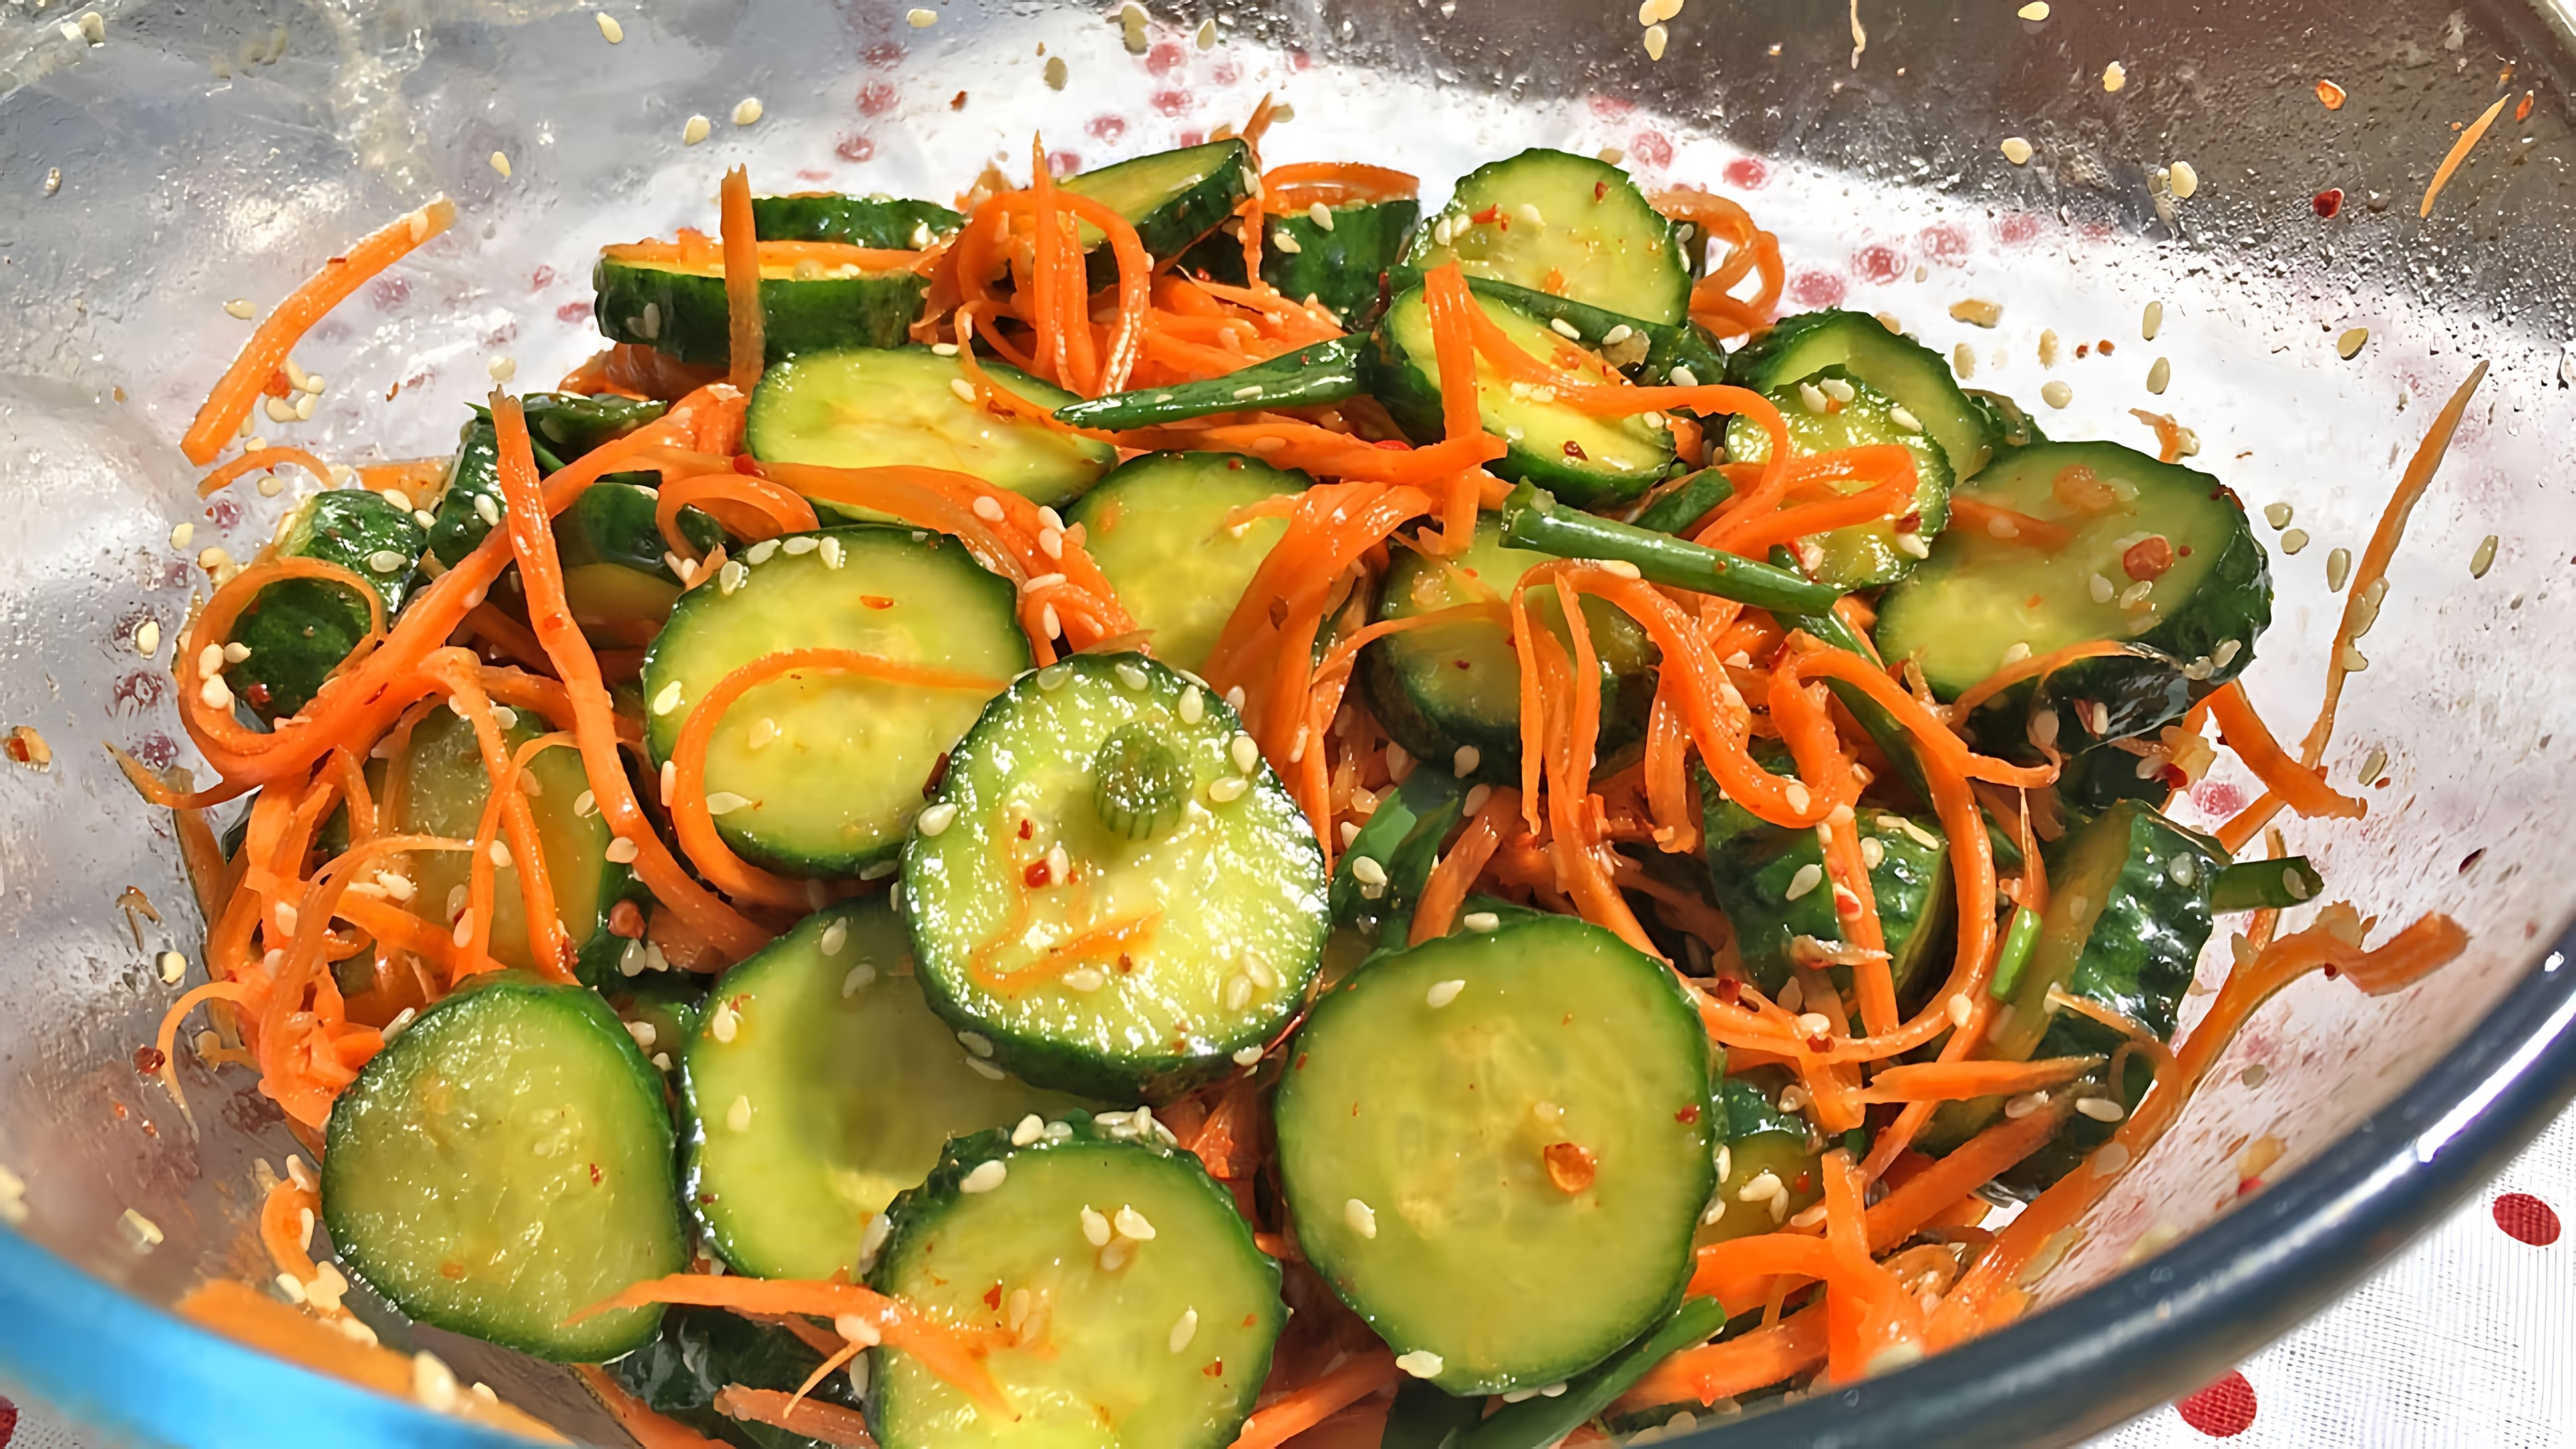 В этом видео демонстрируется рецепт приготовления кимчи из огурцов, который является быстрым и вкусным салатом